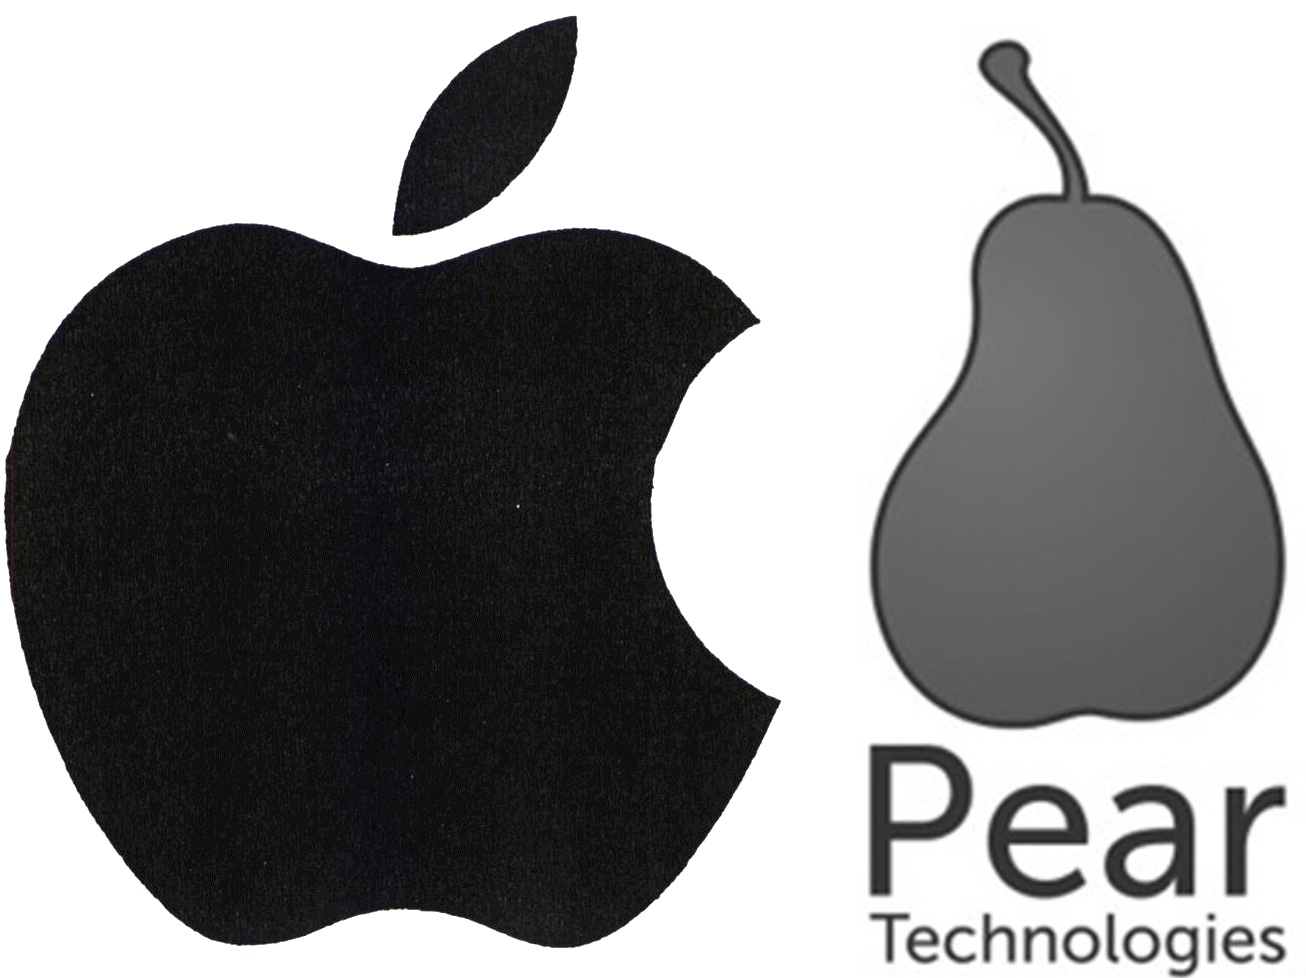 Bild: Gegenüberstellung der Apfel- und Birnen-Marken von Apple und Pear Technologies